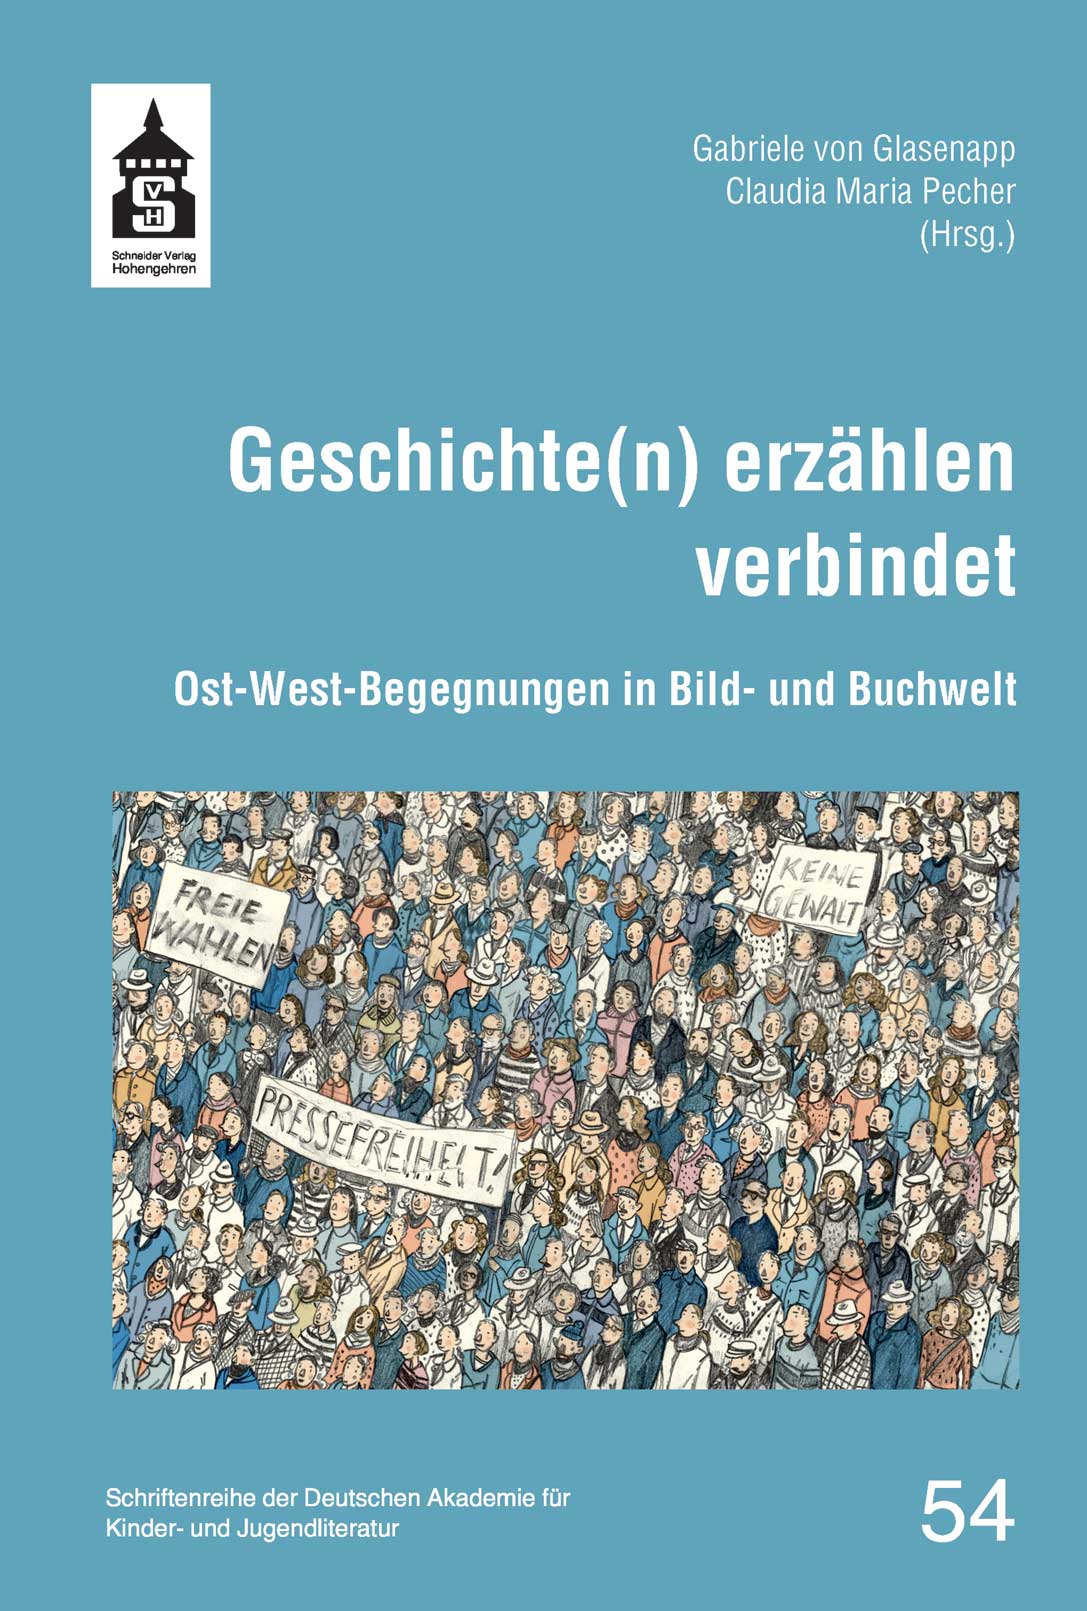 Glasenapp/Pecher (Hrsg.): Geschichte(n) erzählen verbindet. Schneider Hohengehren 2023 (Schriftenreihe, Bd. 54) | Cover